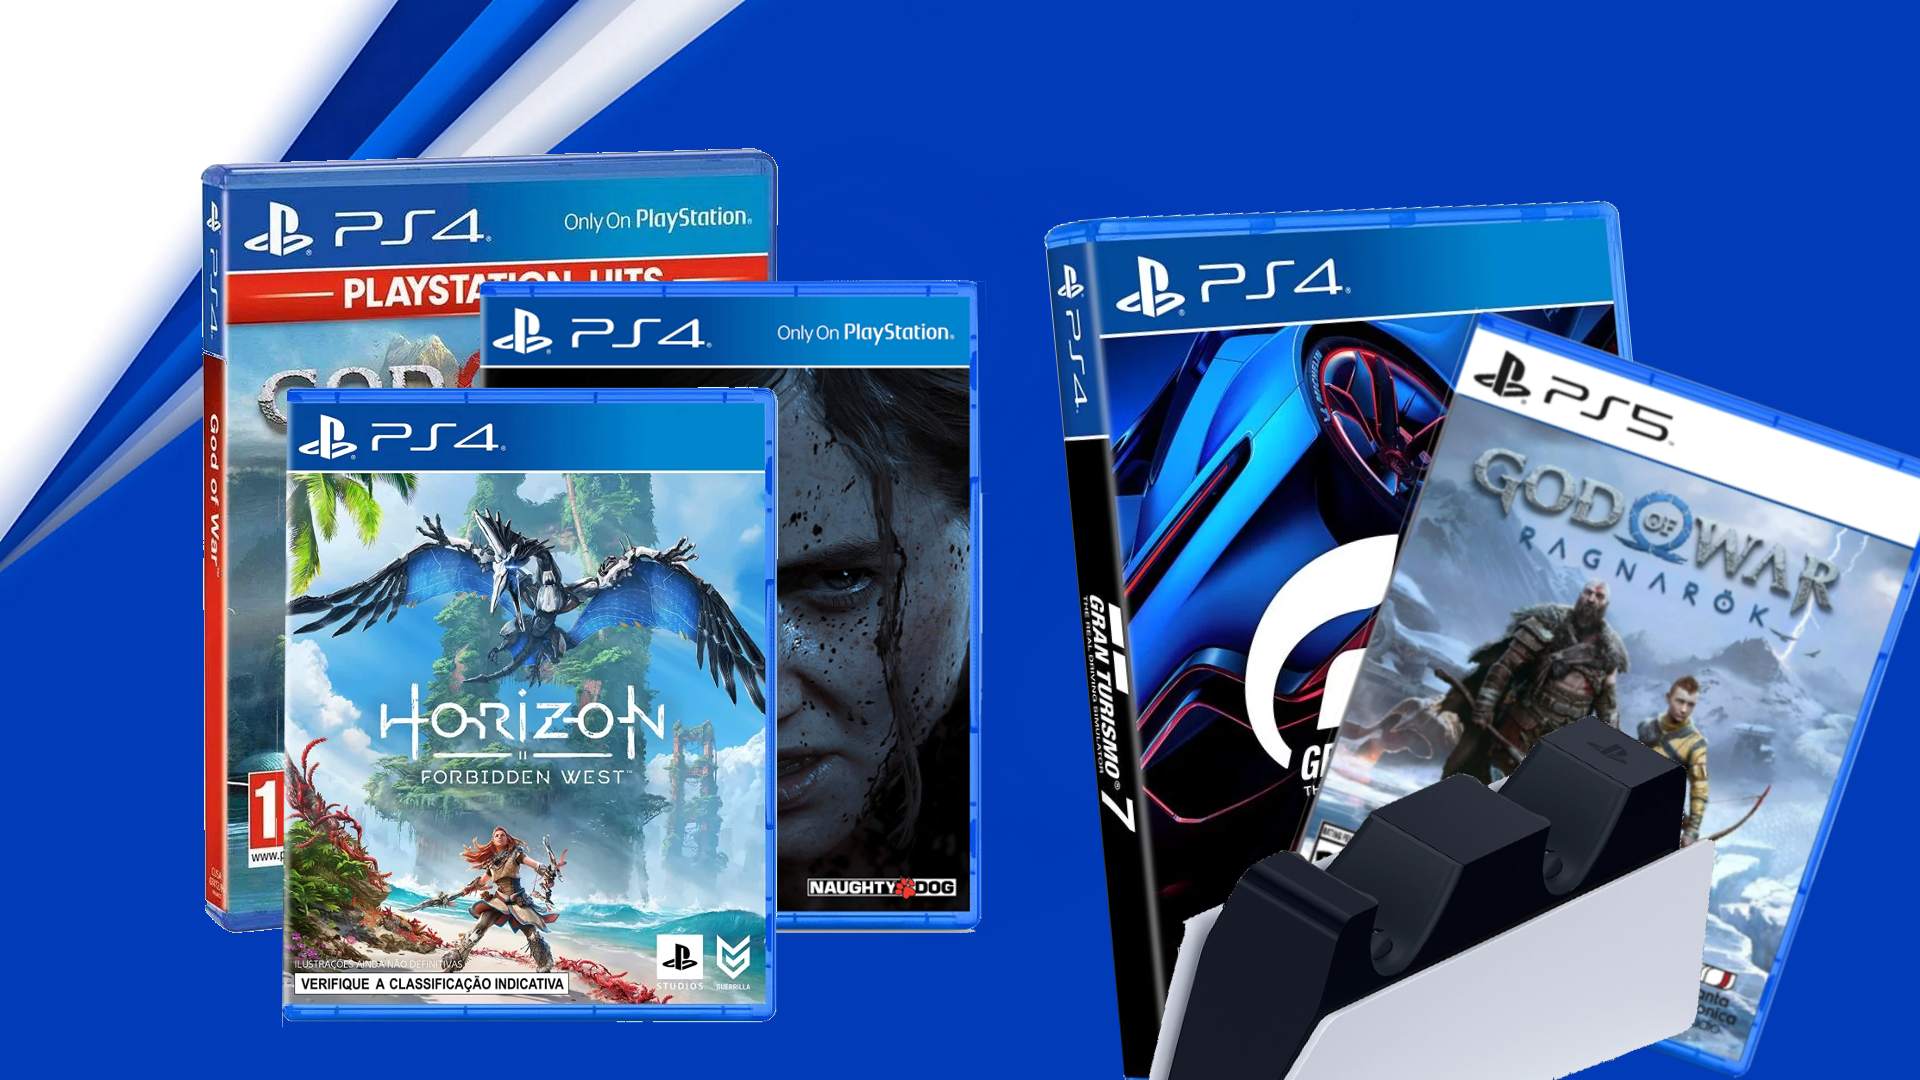 OFERTA DO DIA  Horizon Forbidden West para PS4 por R$ 129,90 na